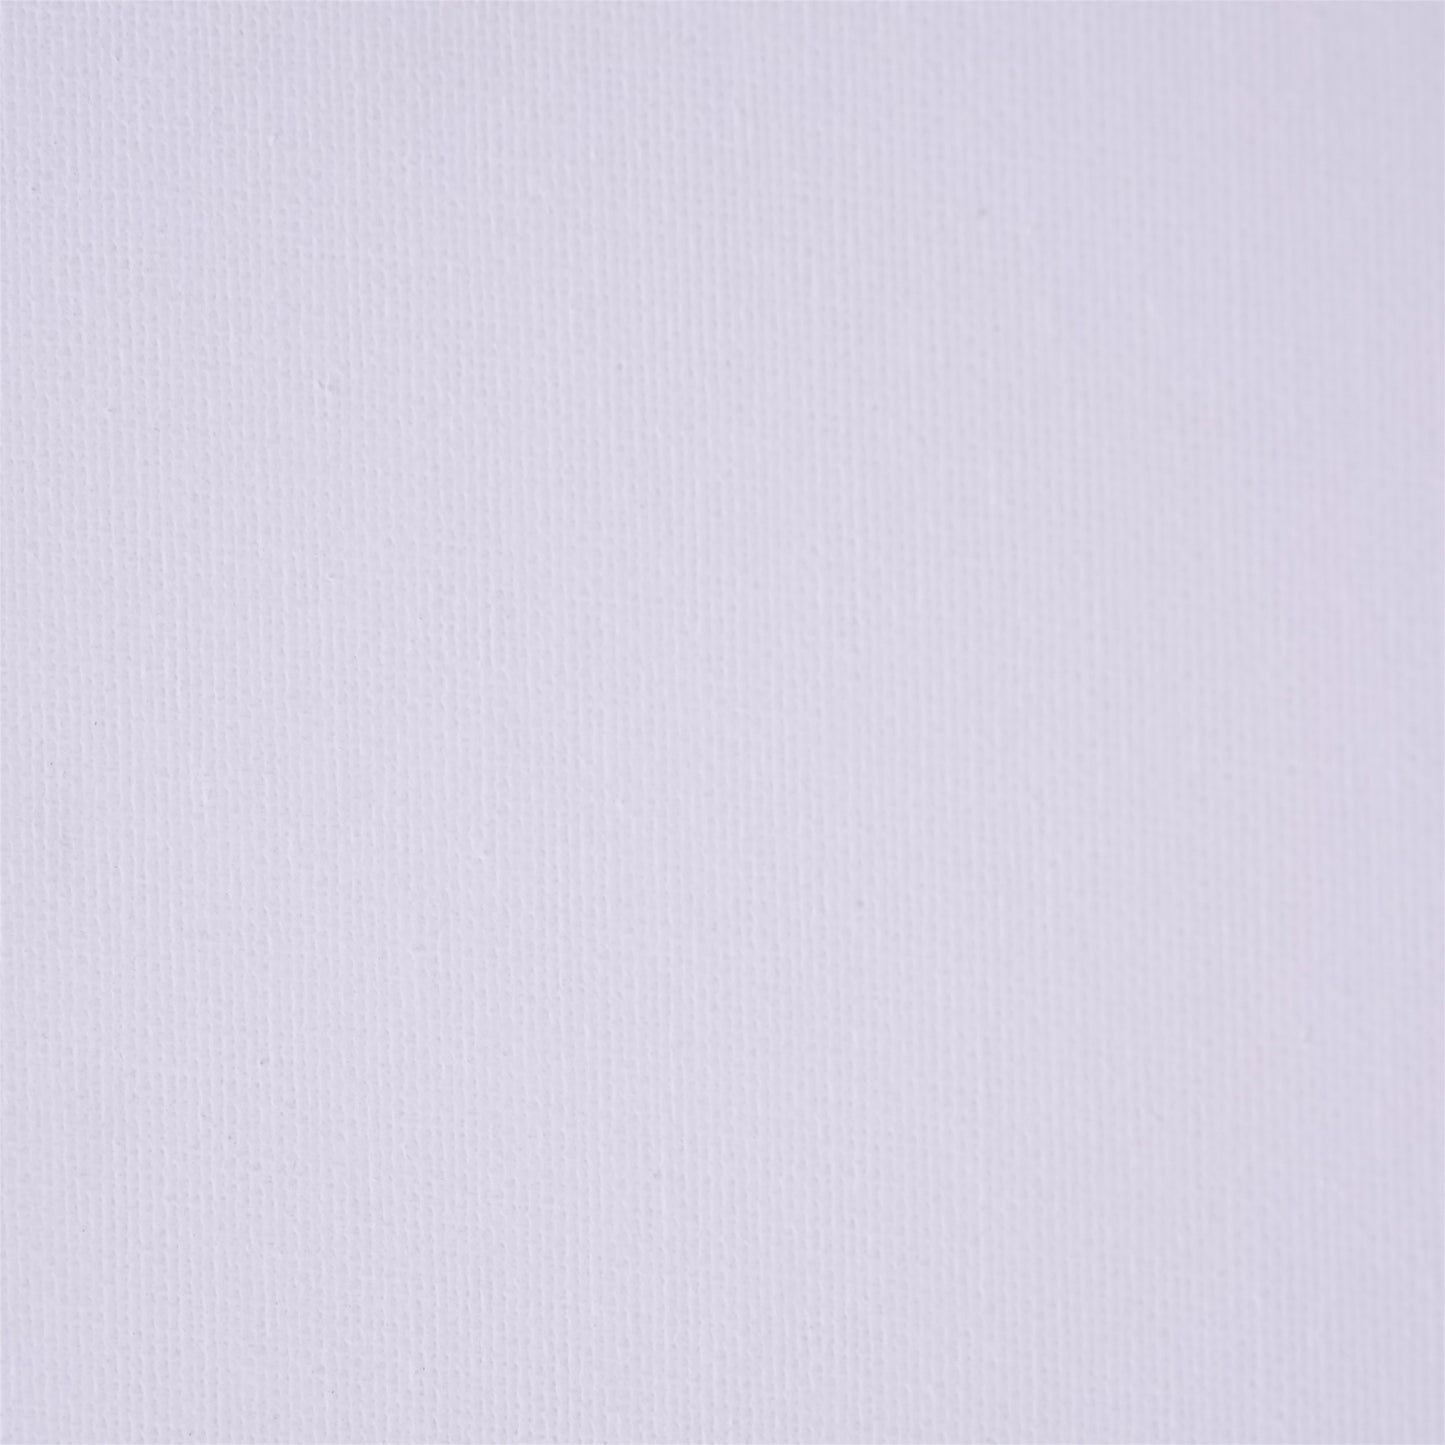 2x KÜNSTLER MALKARTON MIT SCHATTENFUGENRAHMEN 50x60 cm | Leinwand Set